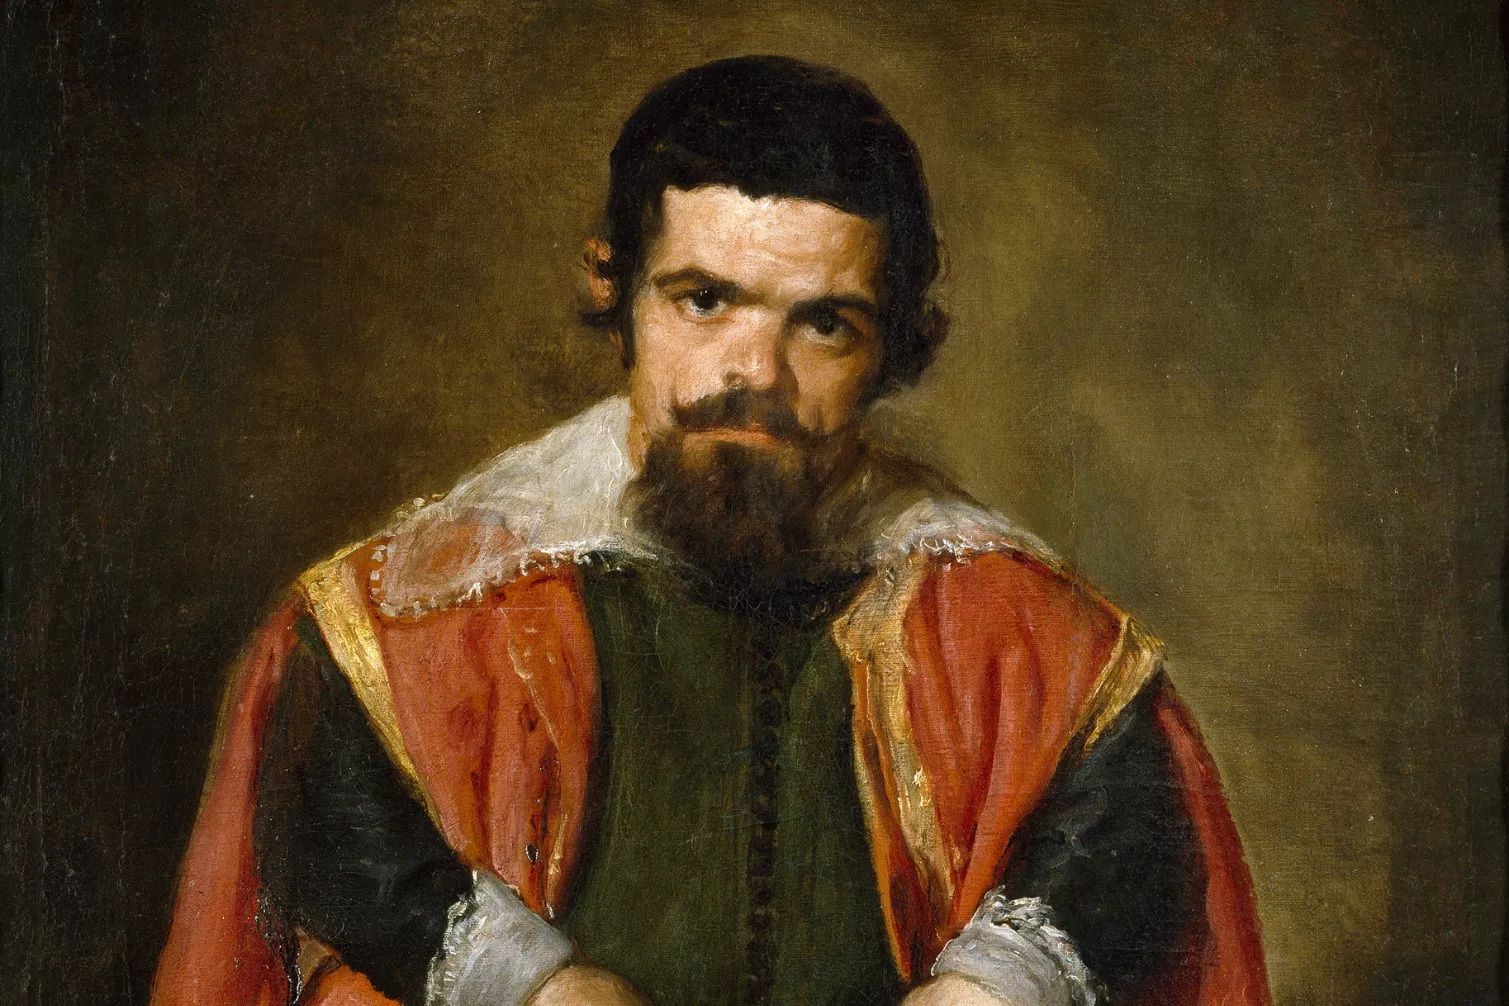 Sebastián de Morra, pintat per Velázquez. La pintura ens mostra el nan amb un rostre més aviat trist, lluny de la típica imatge que correspondria a un bufó de la cort